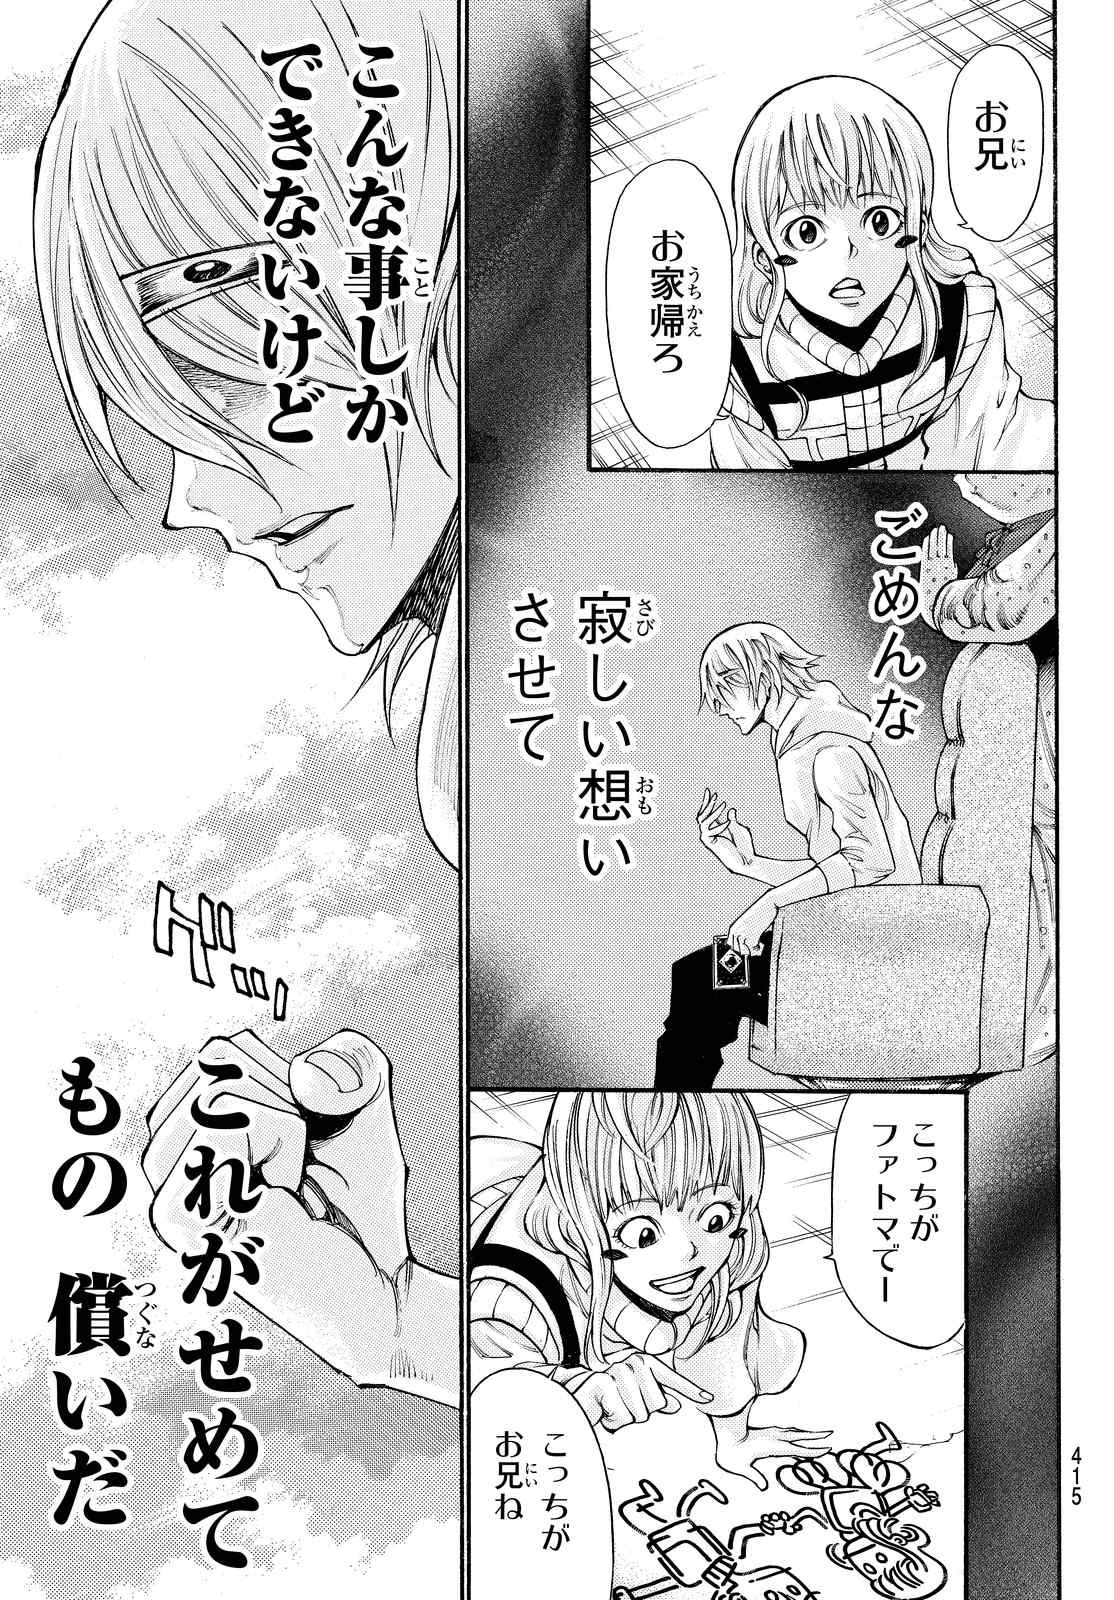 Kamisama no Ituori - Chapter 158 - Page 3